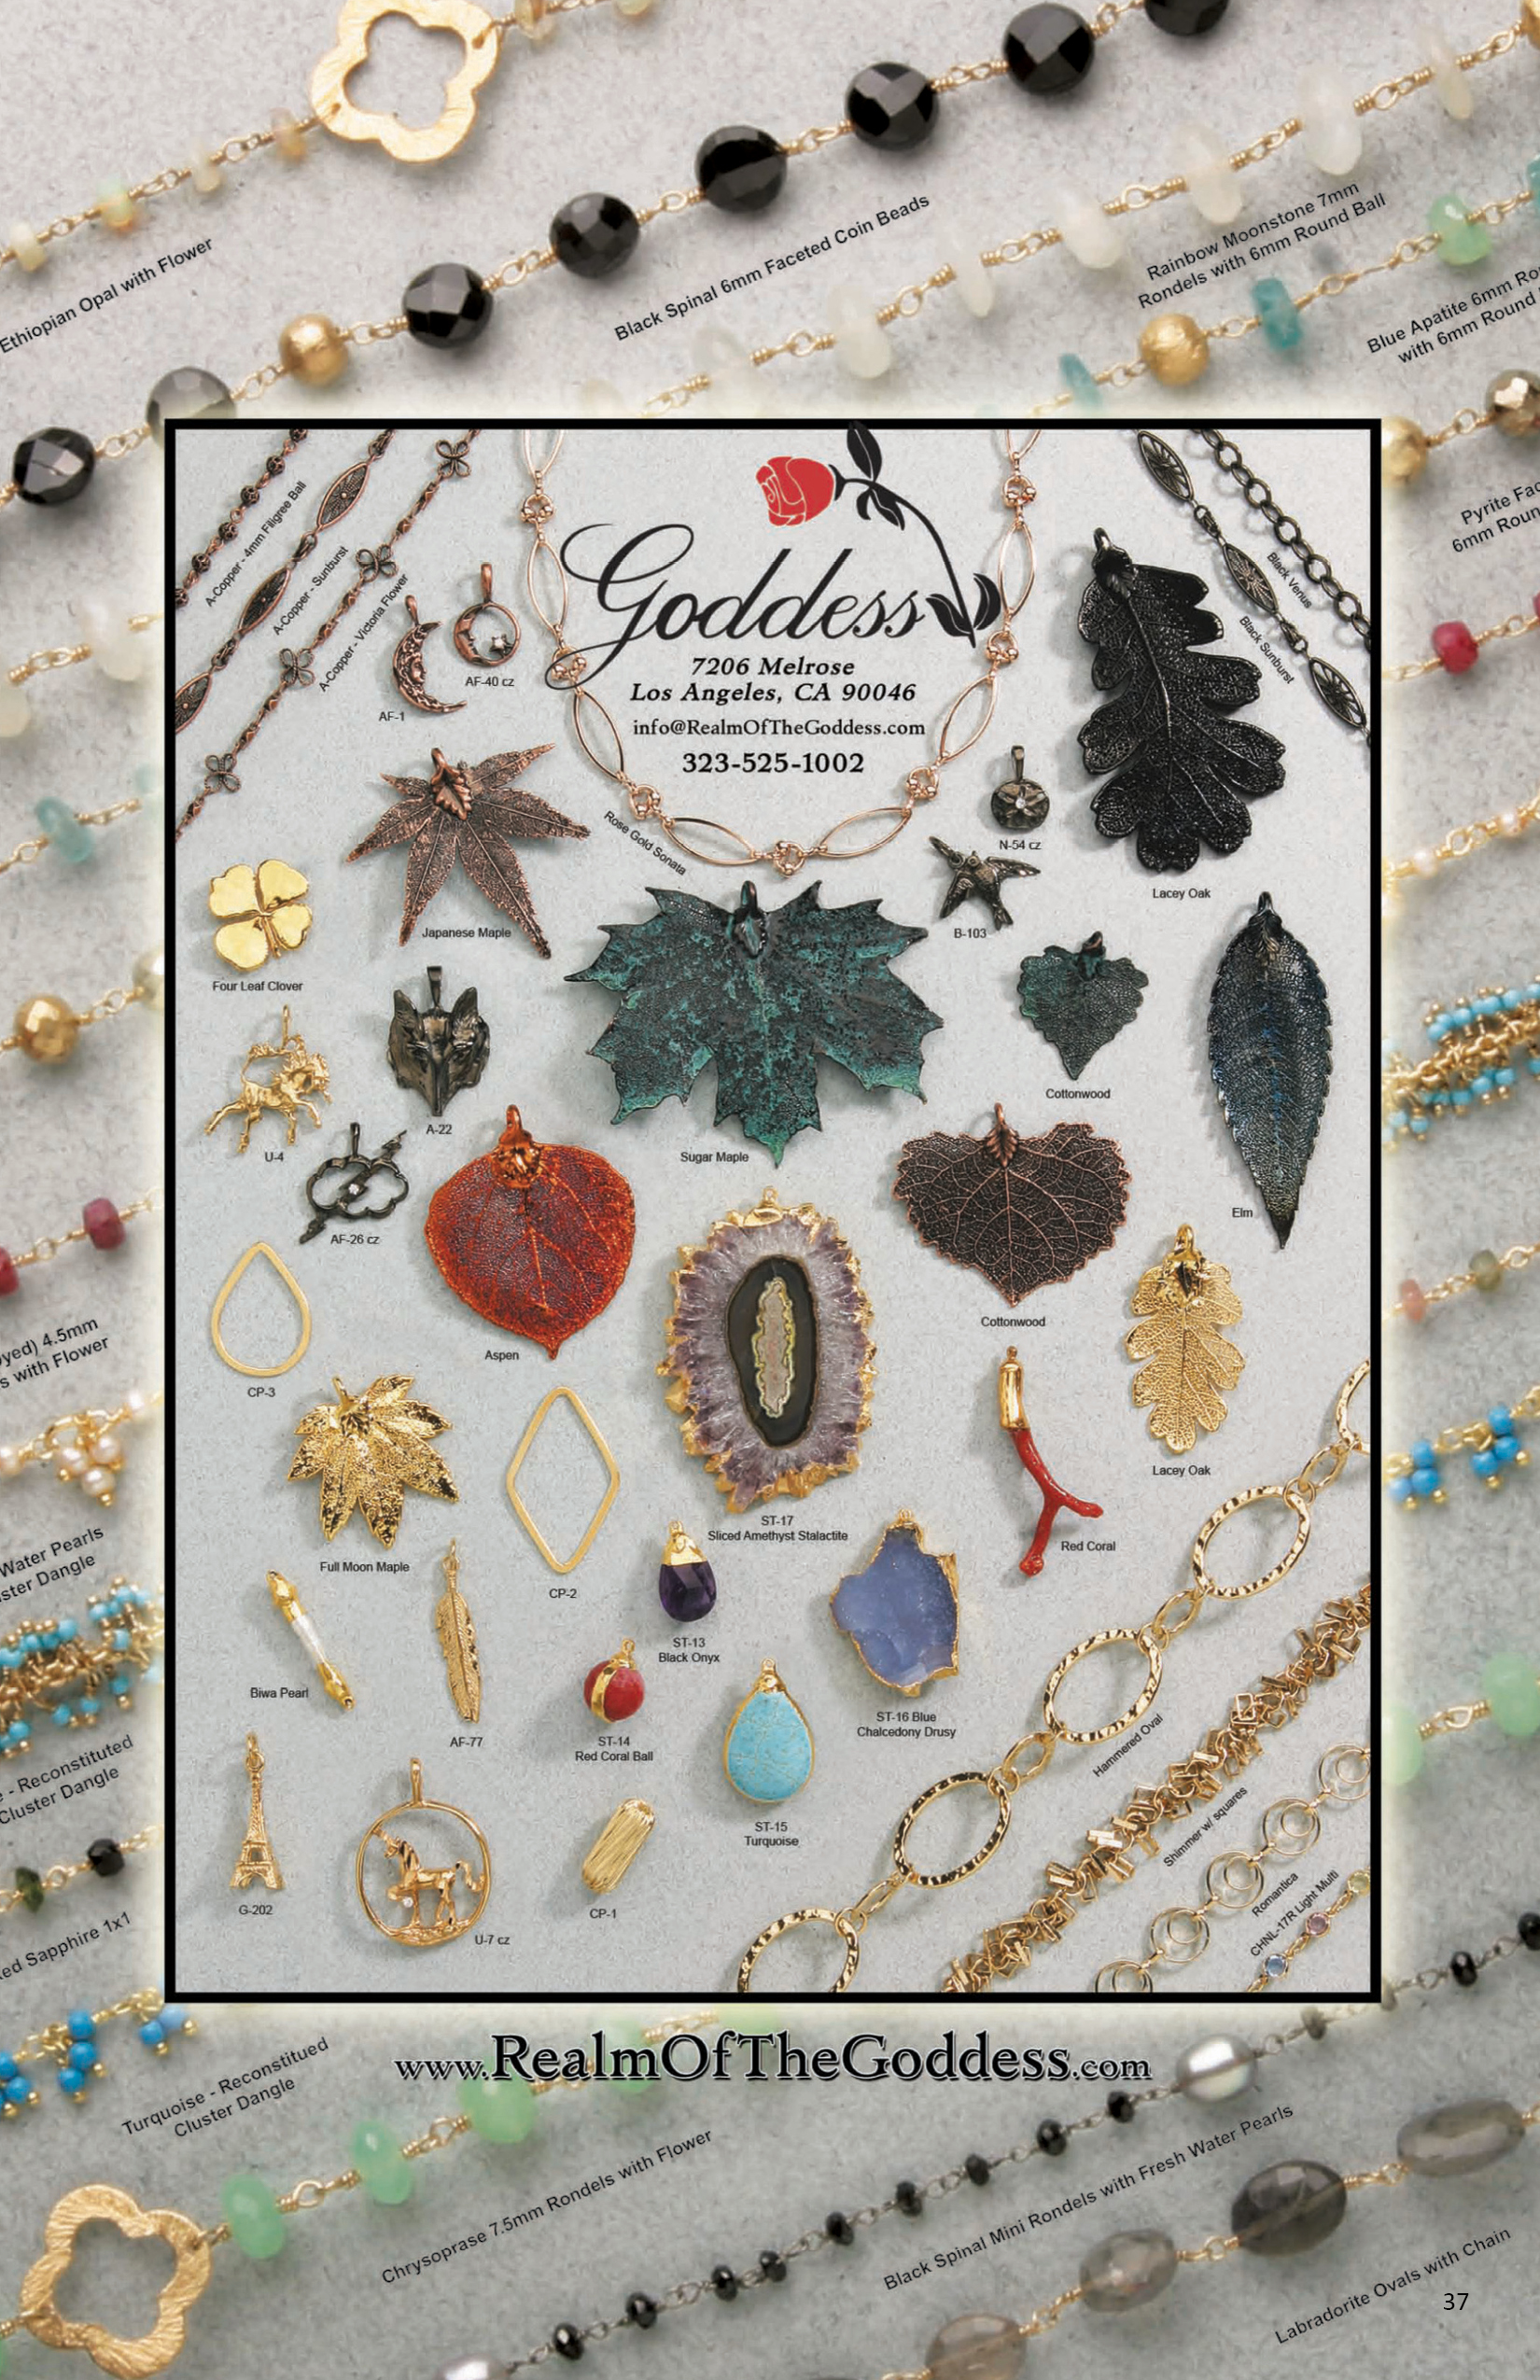 Gems & Jewelry Magazine